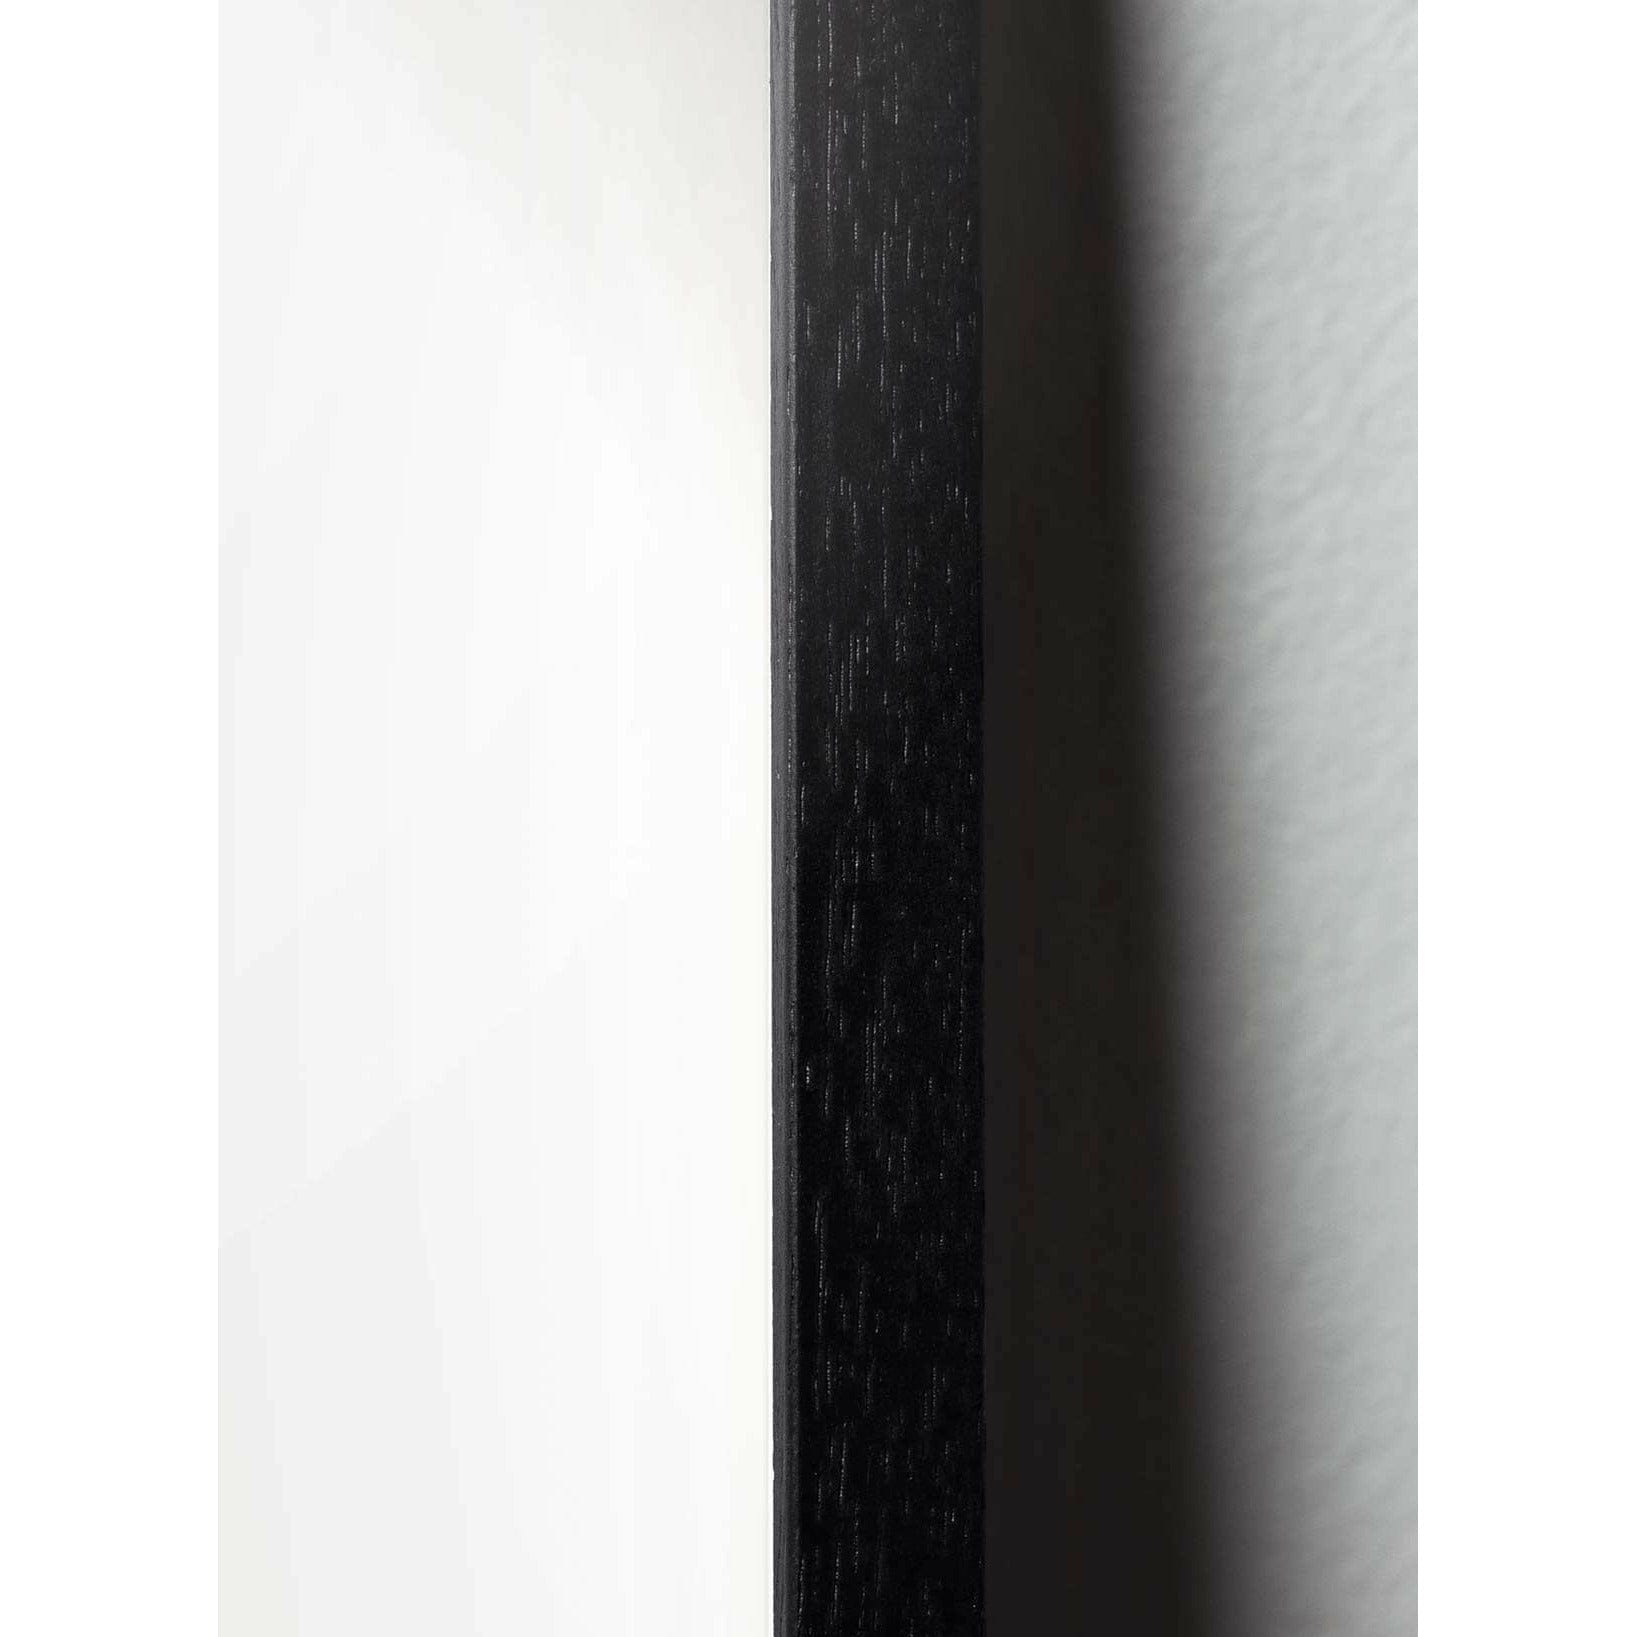 Póster clásico de BrainChild Drop, marco en madera lacada en negro 50x70 cm, fondo de color arena